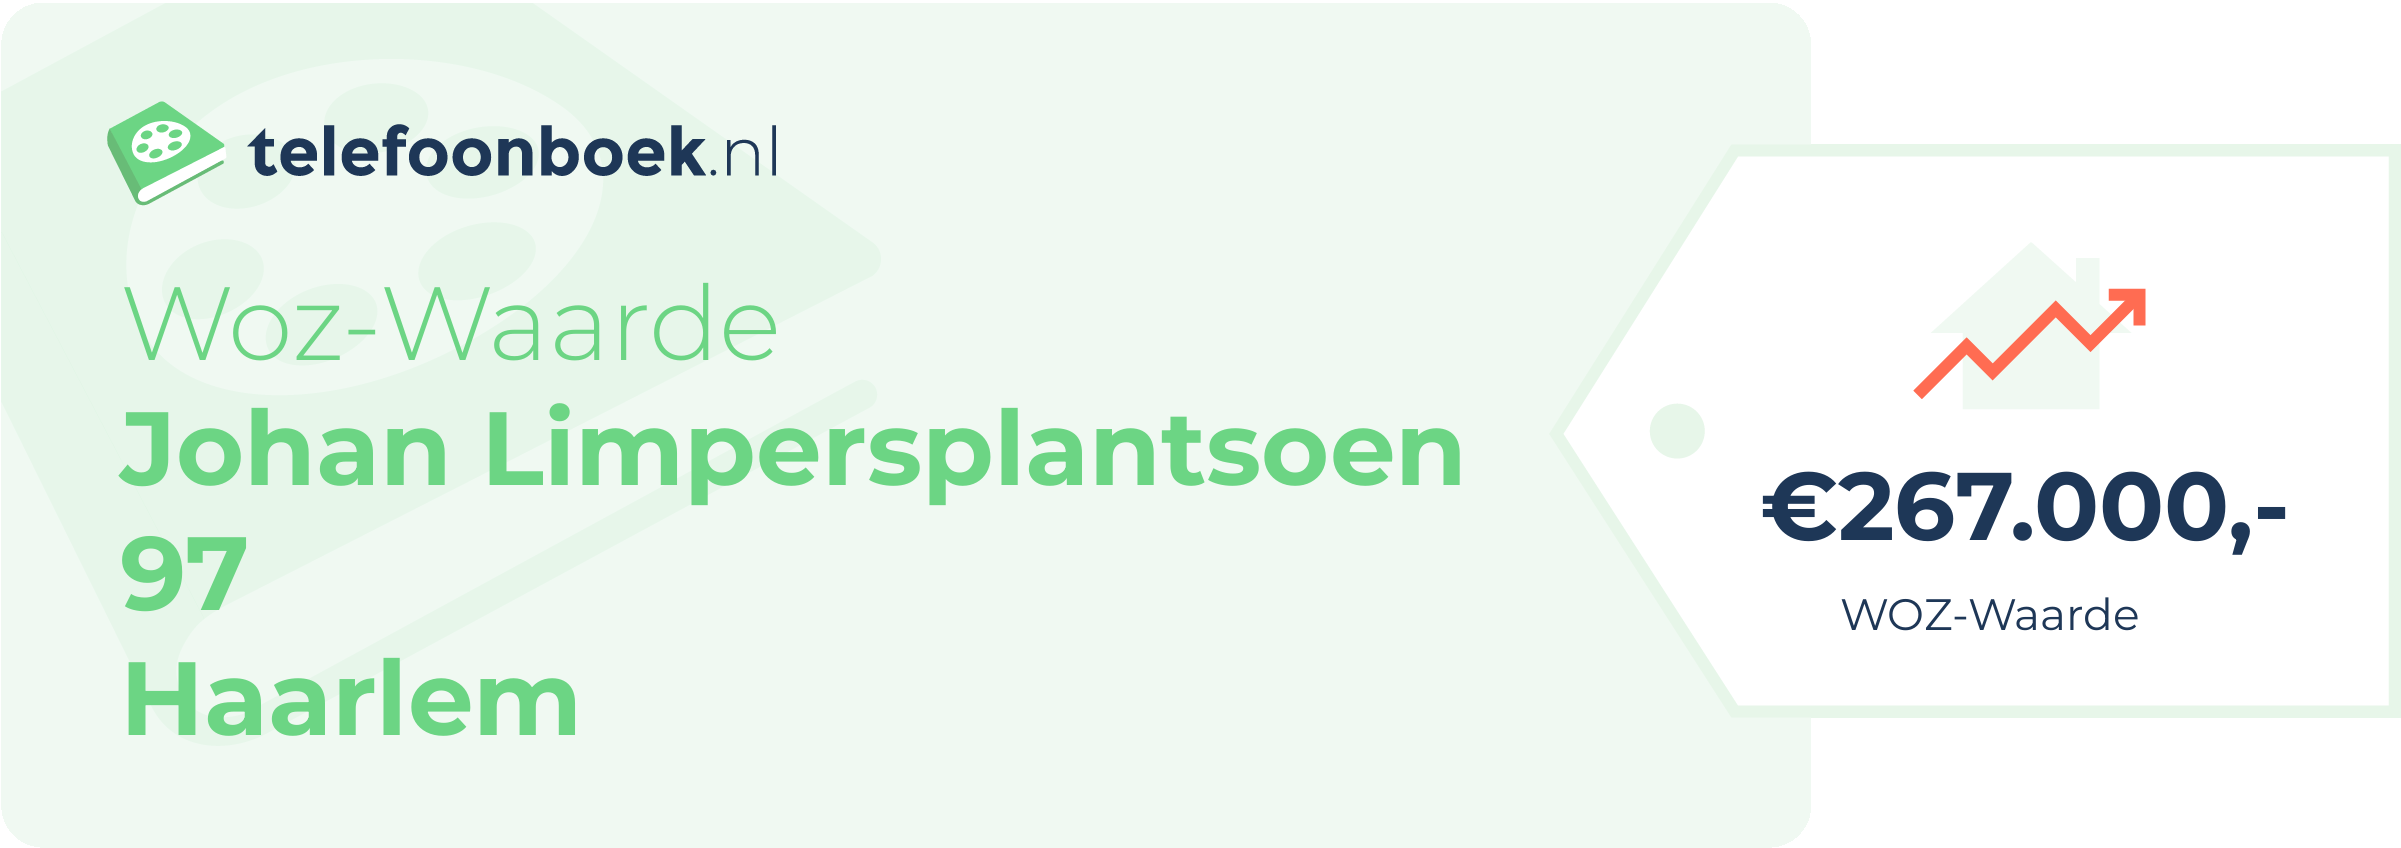 WOZ-waarde Johan Limpersplantsoen 97 Haarlem